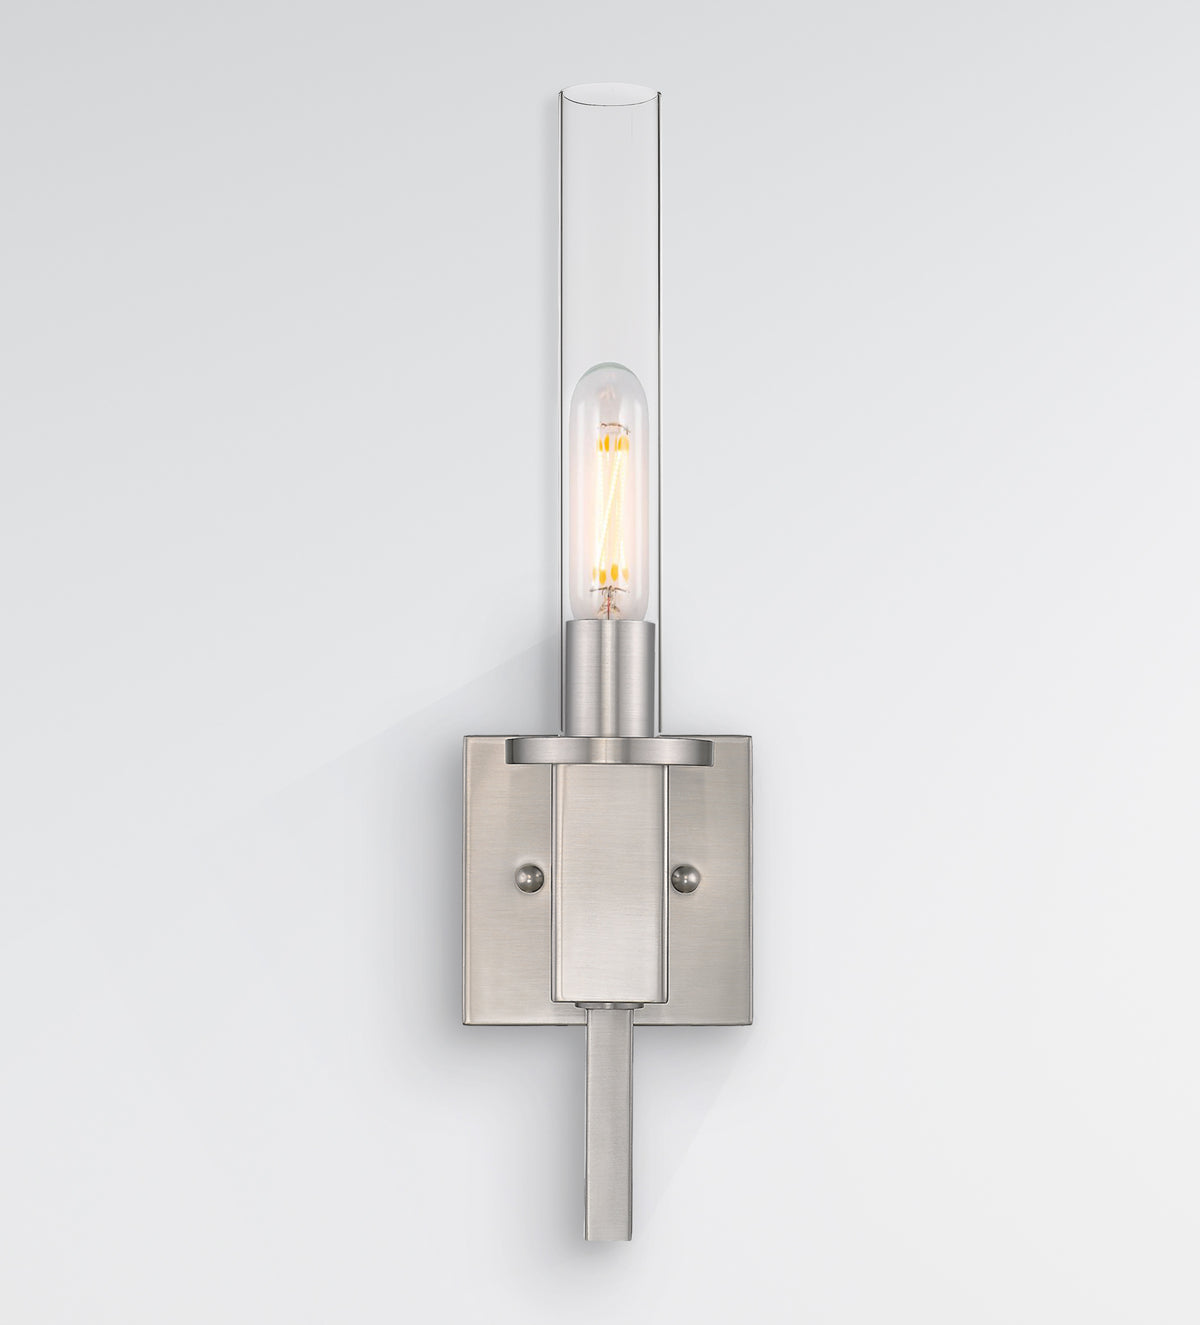 Nickel glass tube wall light for bathroom - Vivio Lighting